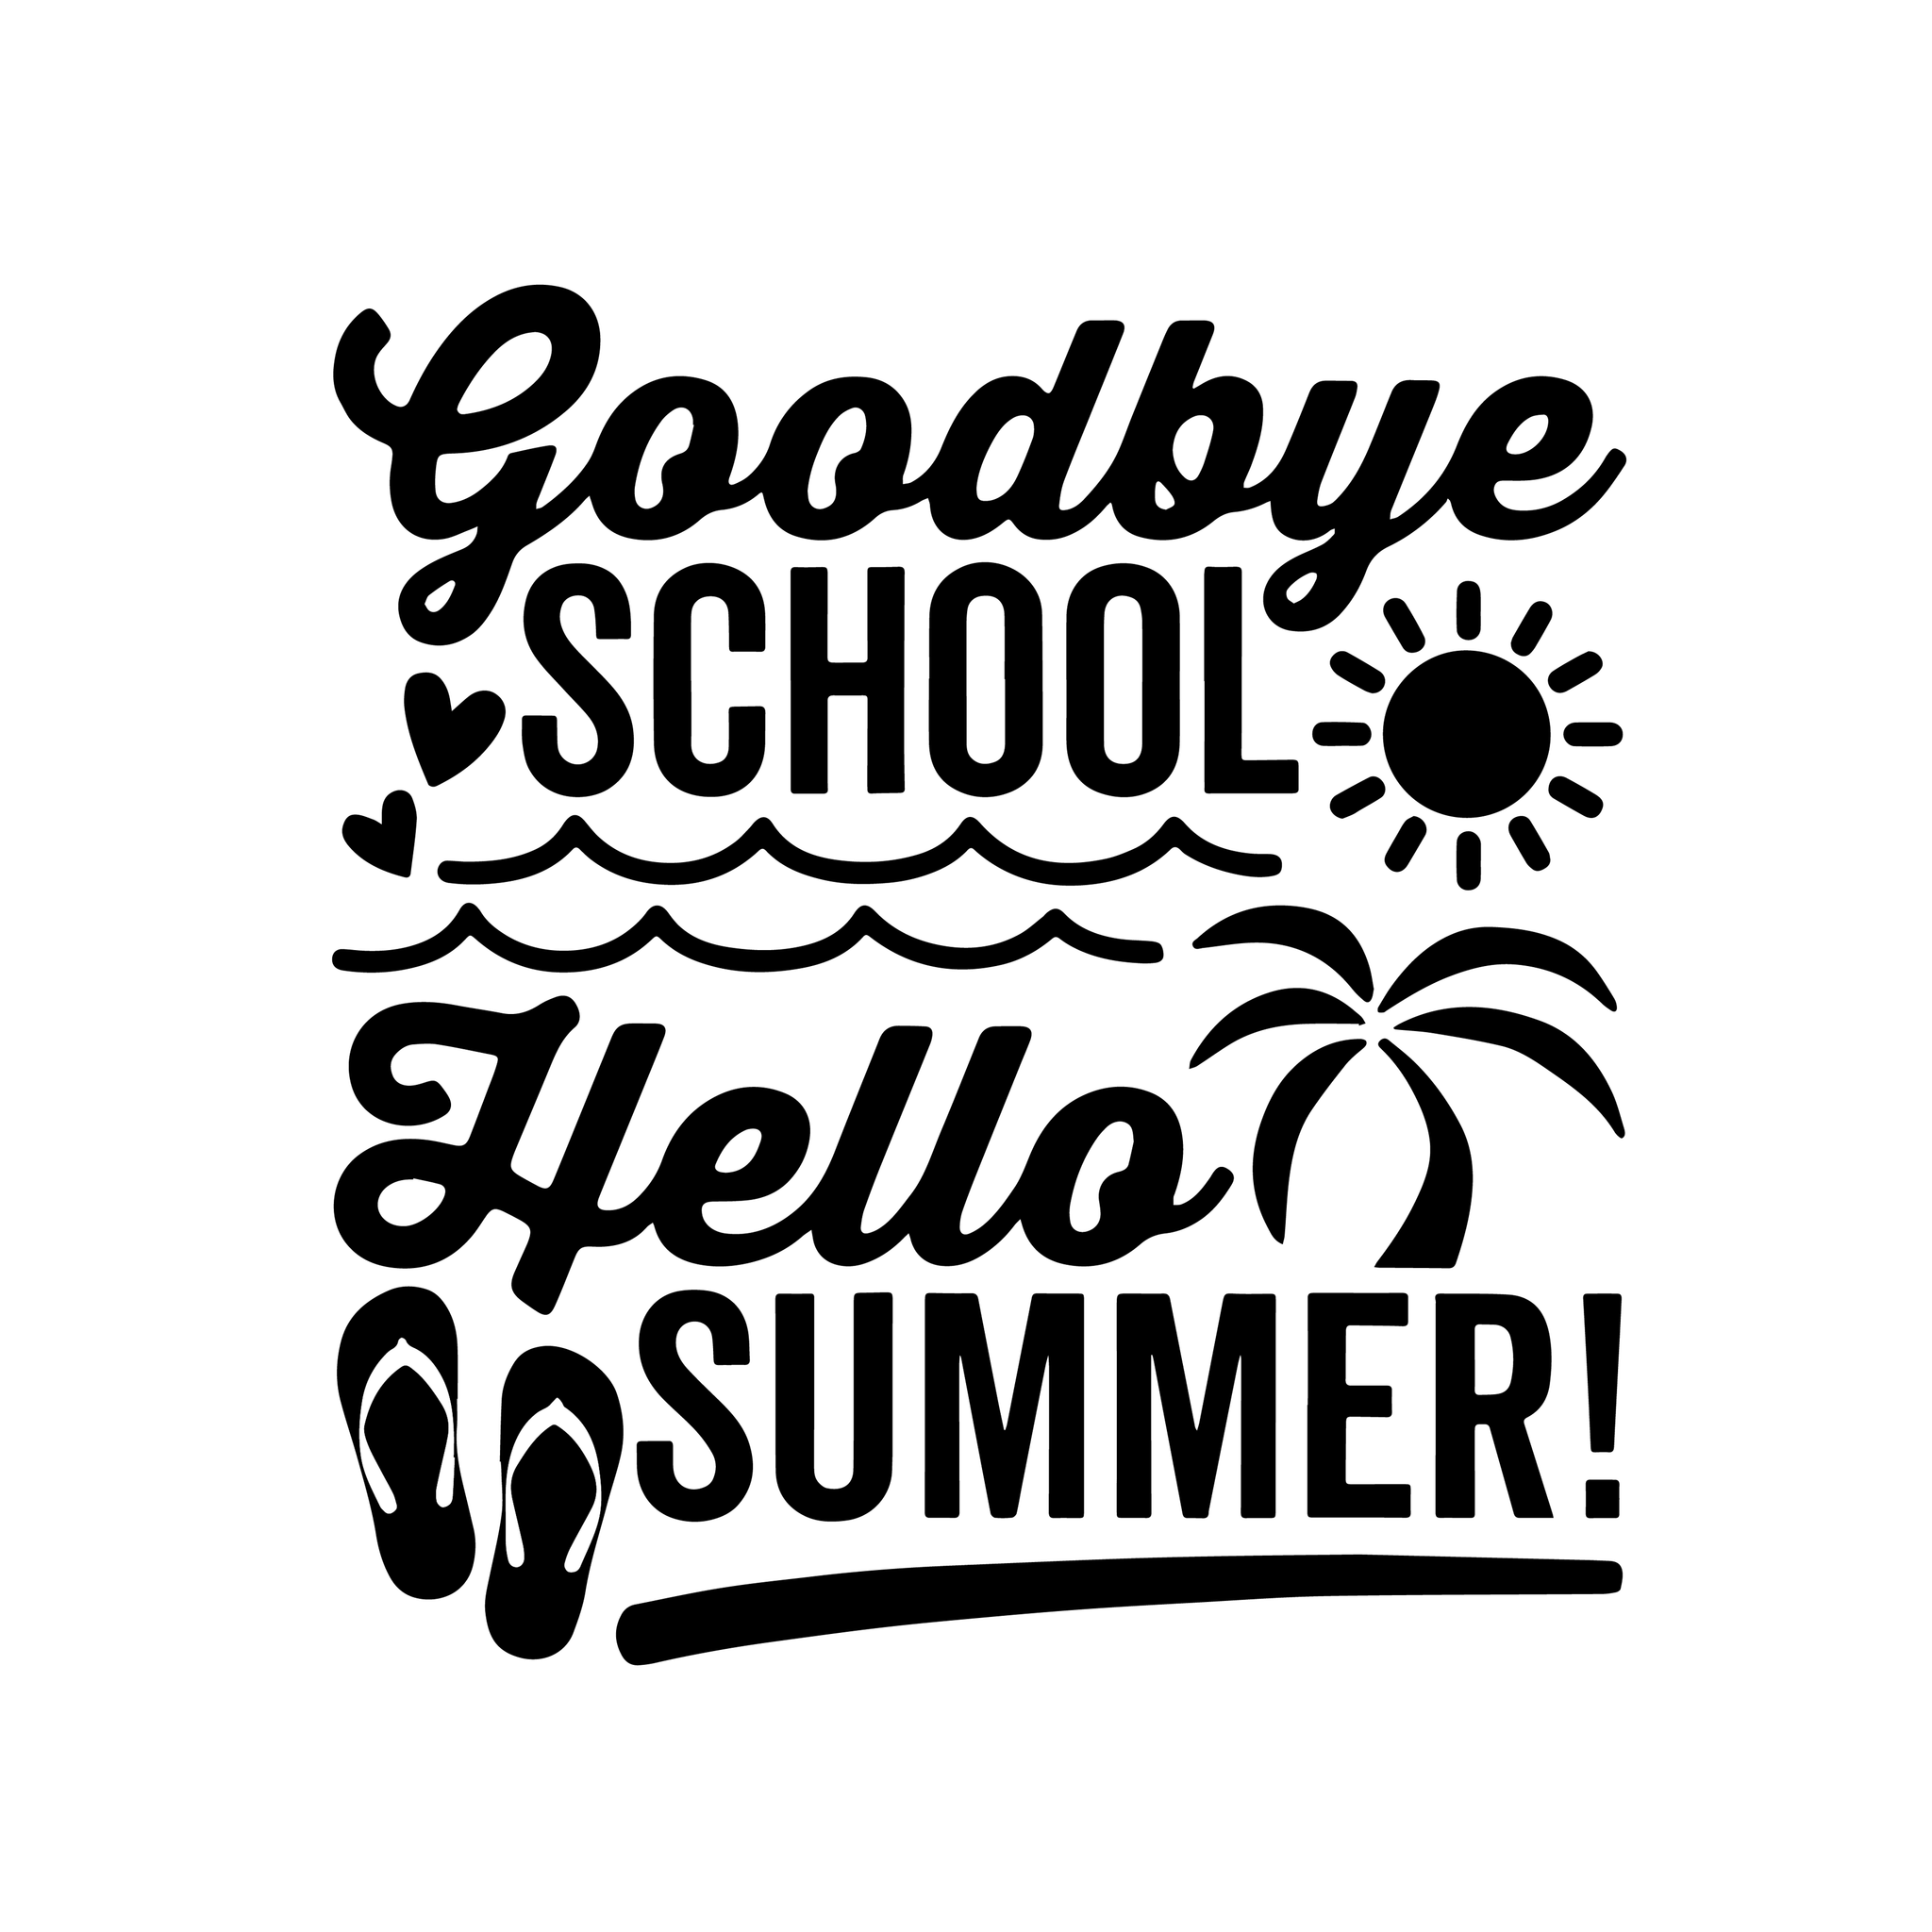 Goodbye school hello summer svg, Goodbye school hello summer, Summer svg, funny quotes, quotes svg, png, eps, dxf file